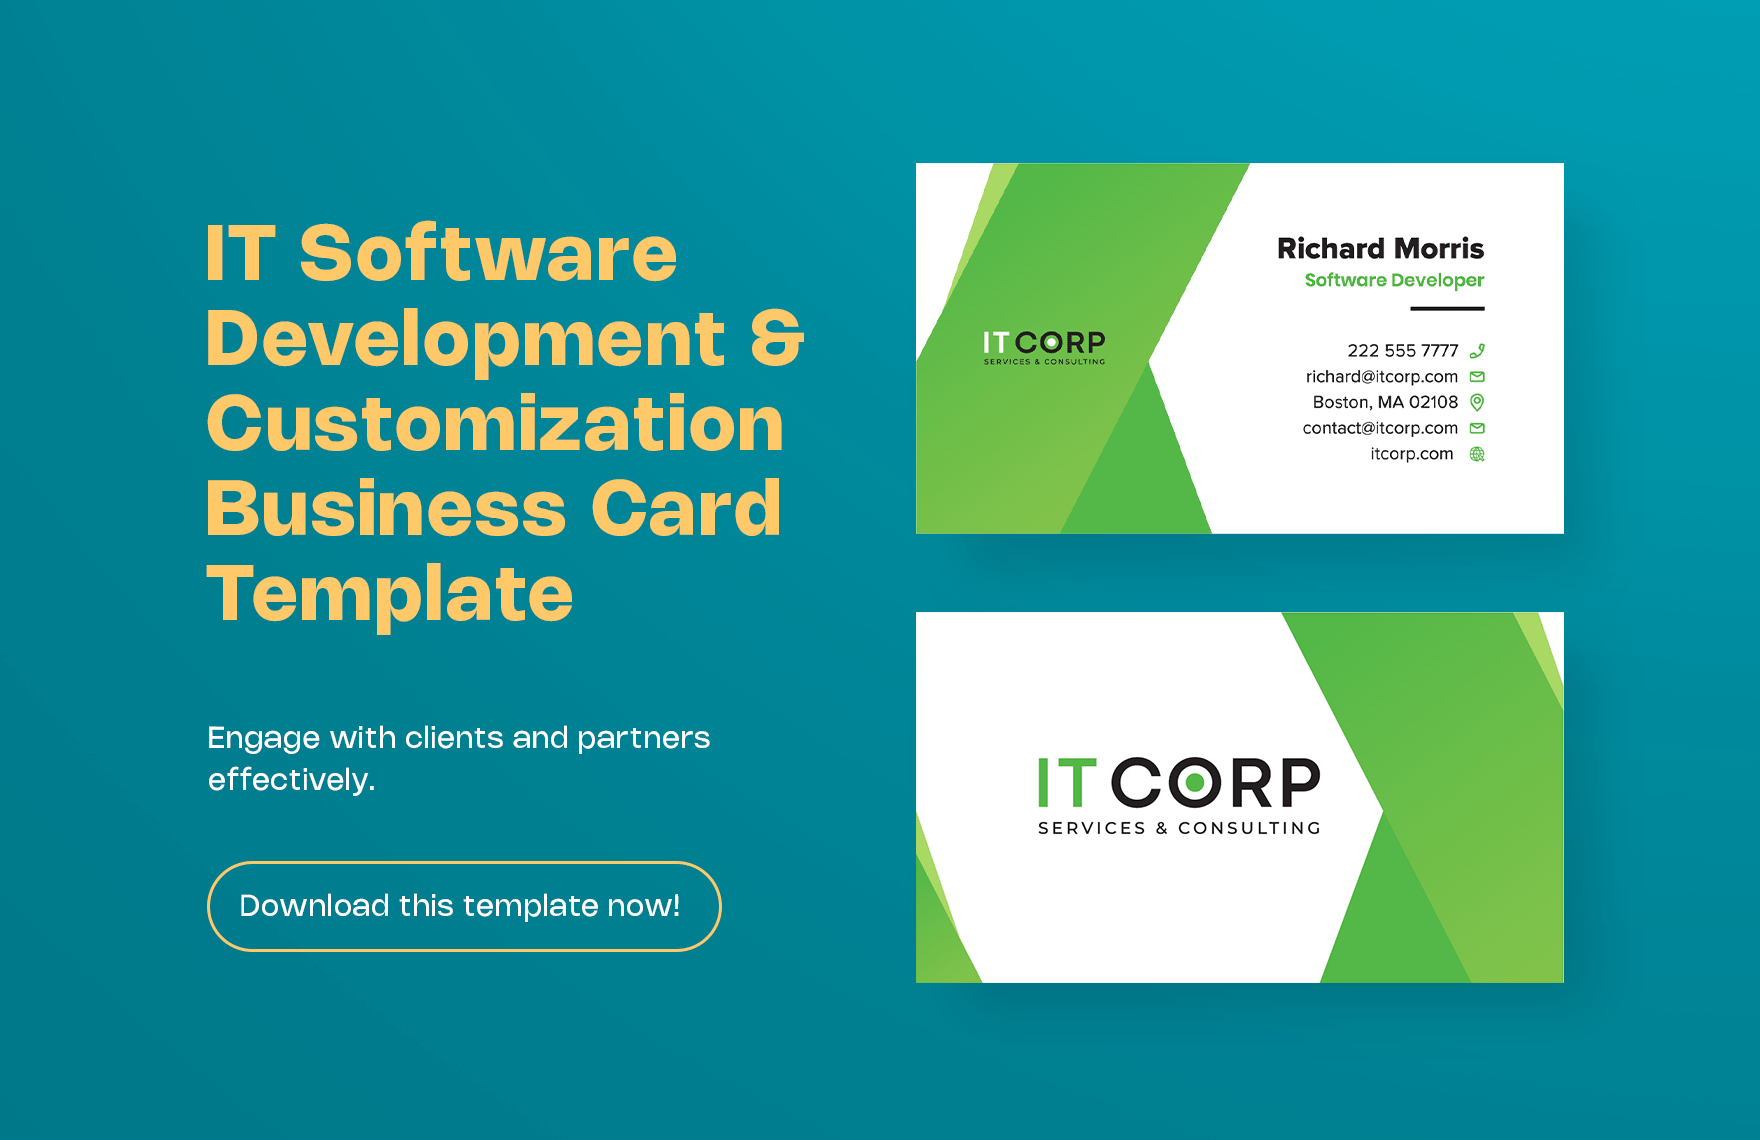 IT Software Development & Customization Business Card Template